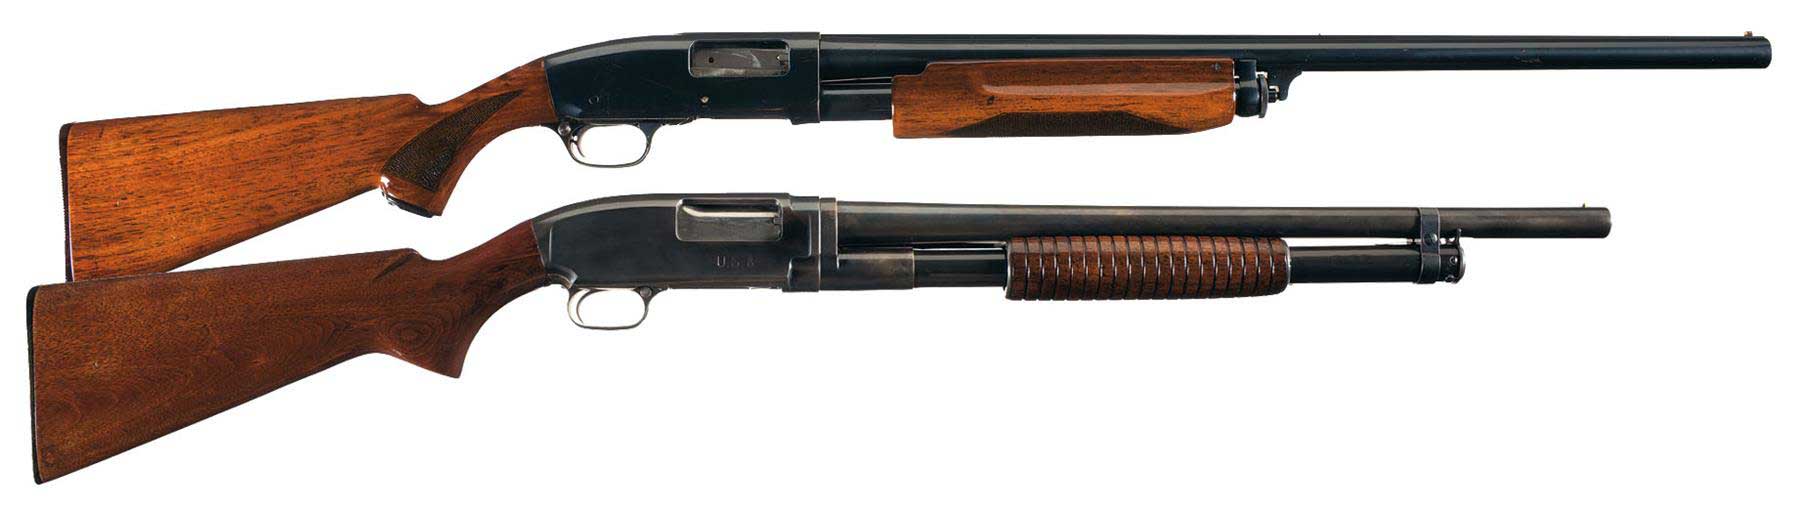 Remington-31